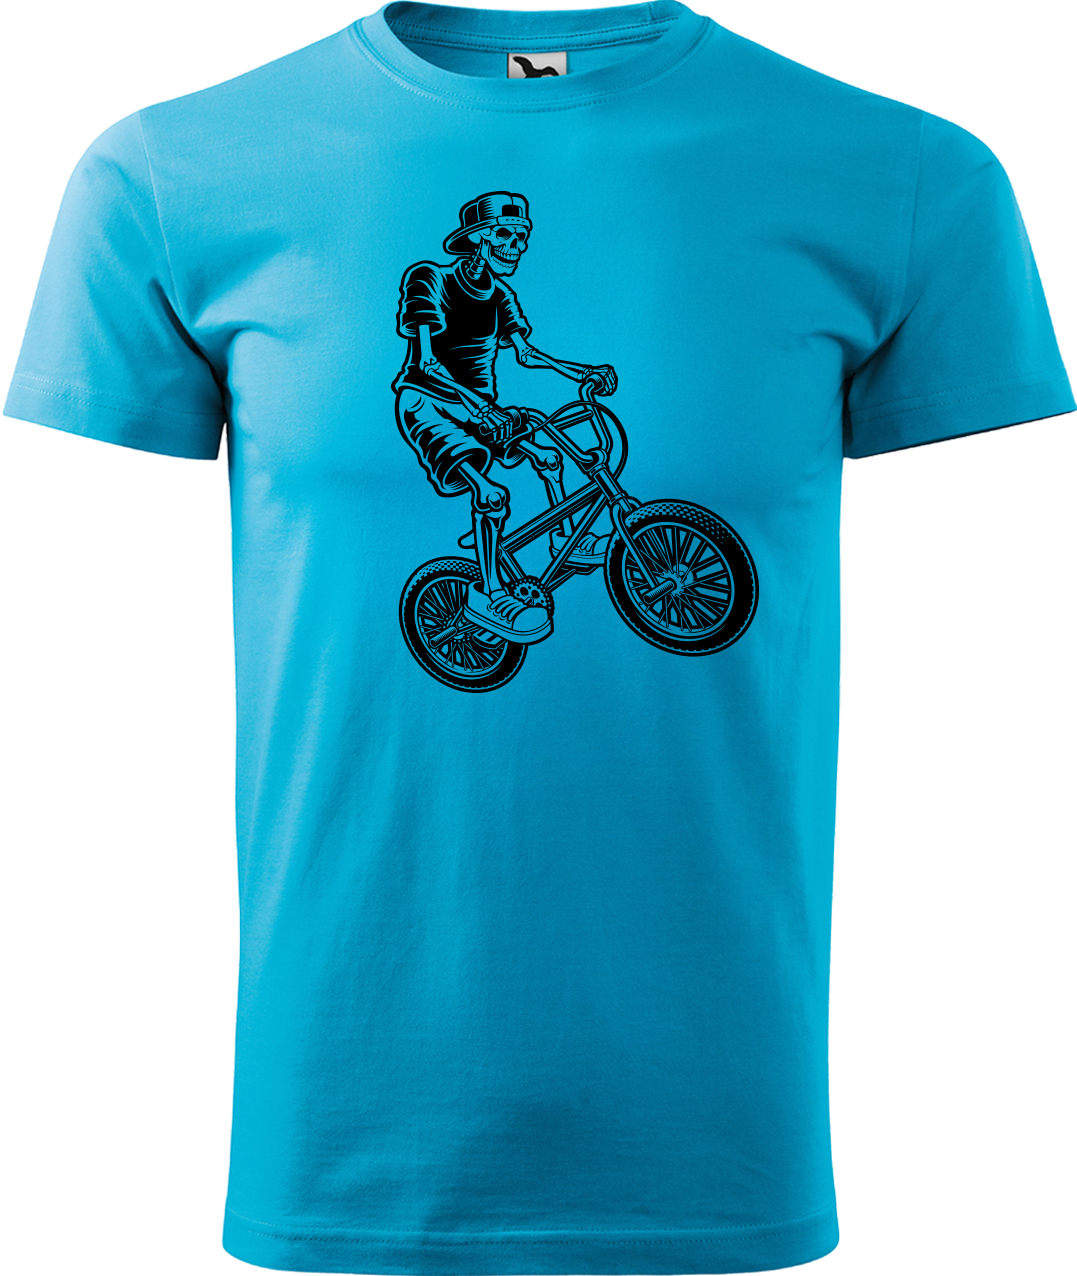 Pánské tričko s kolem - Trial Bike Velikost: XL, Barva: Tyrkysová (44)